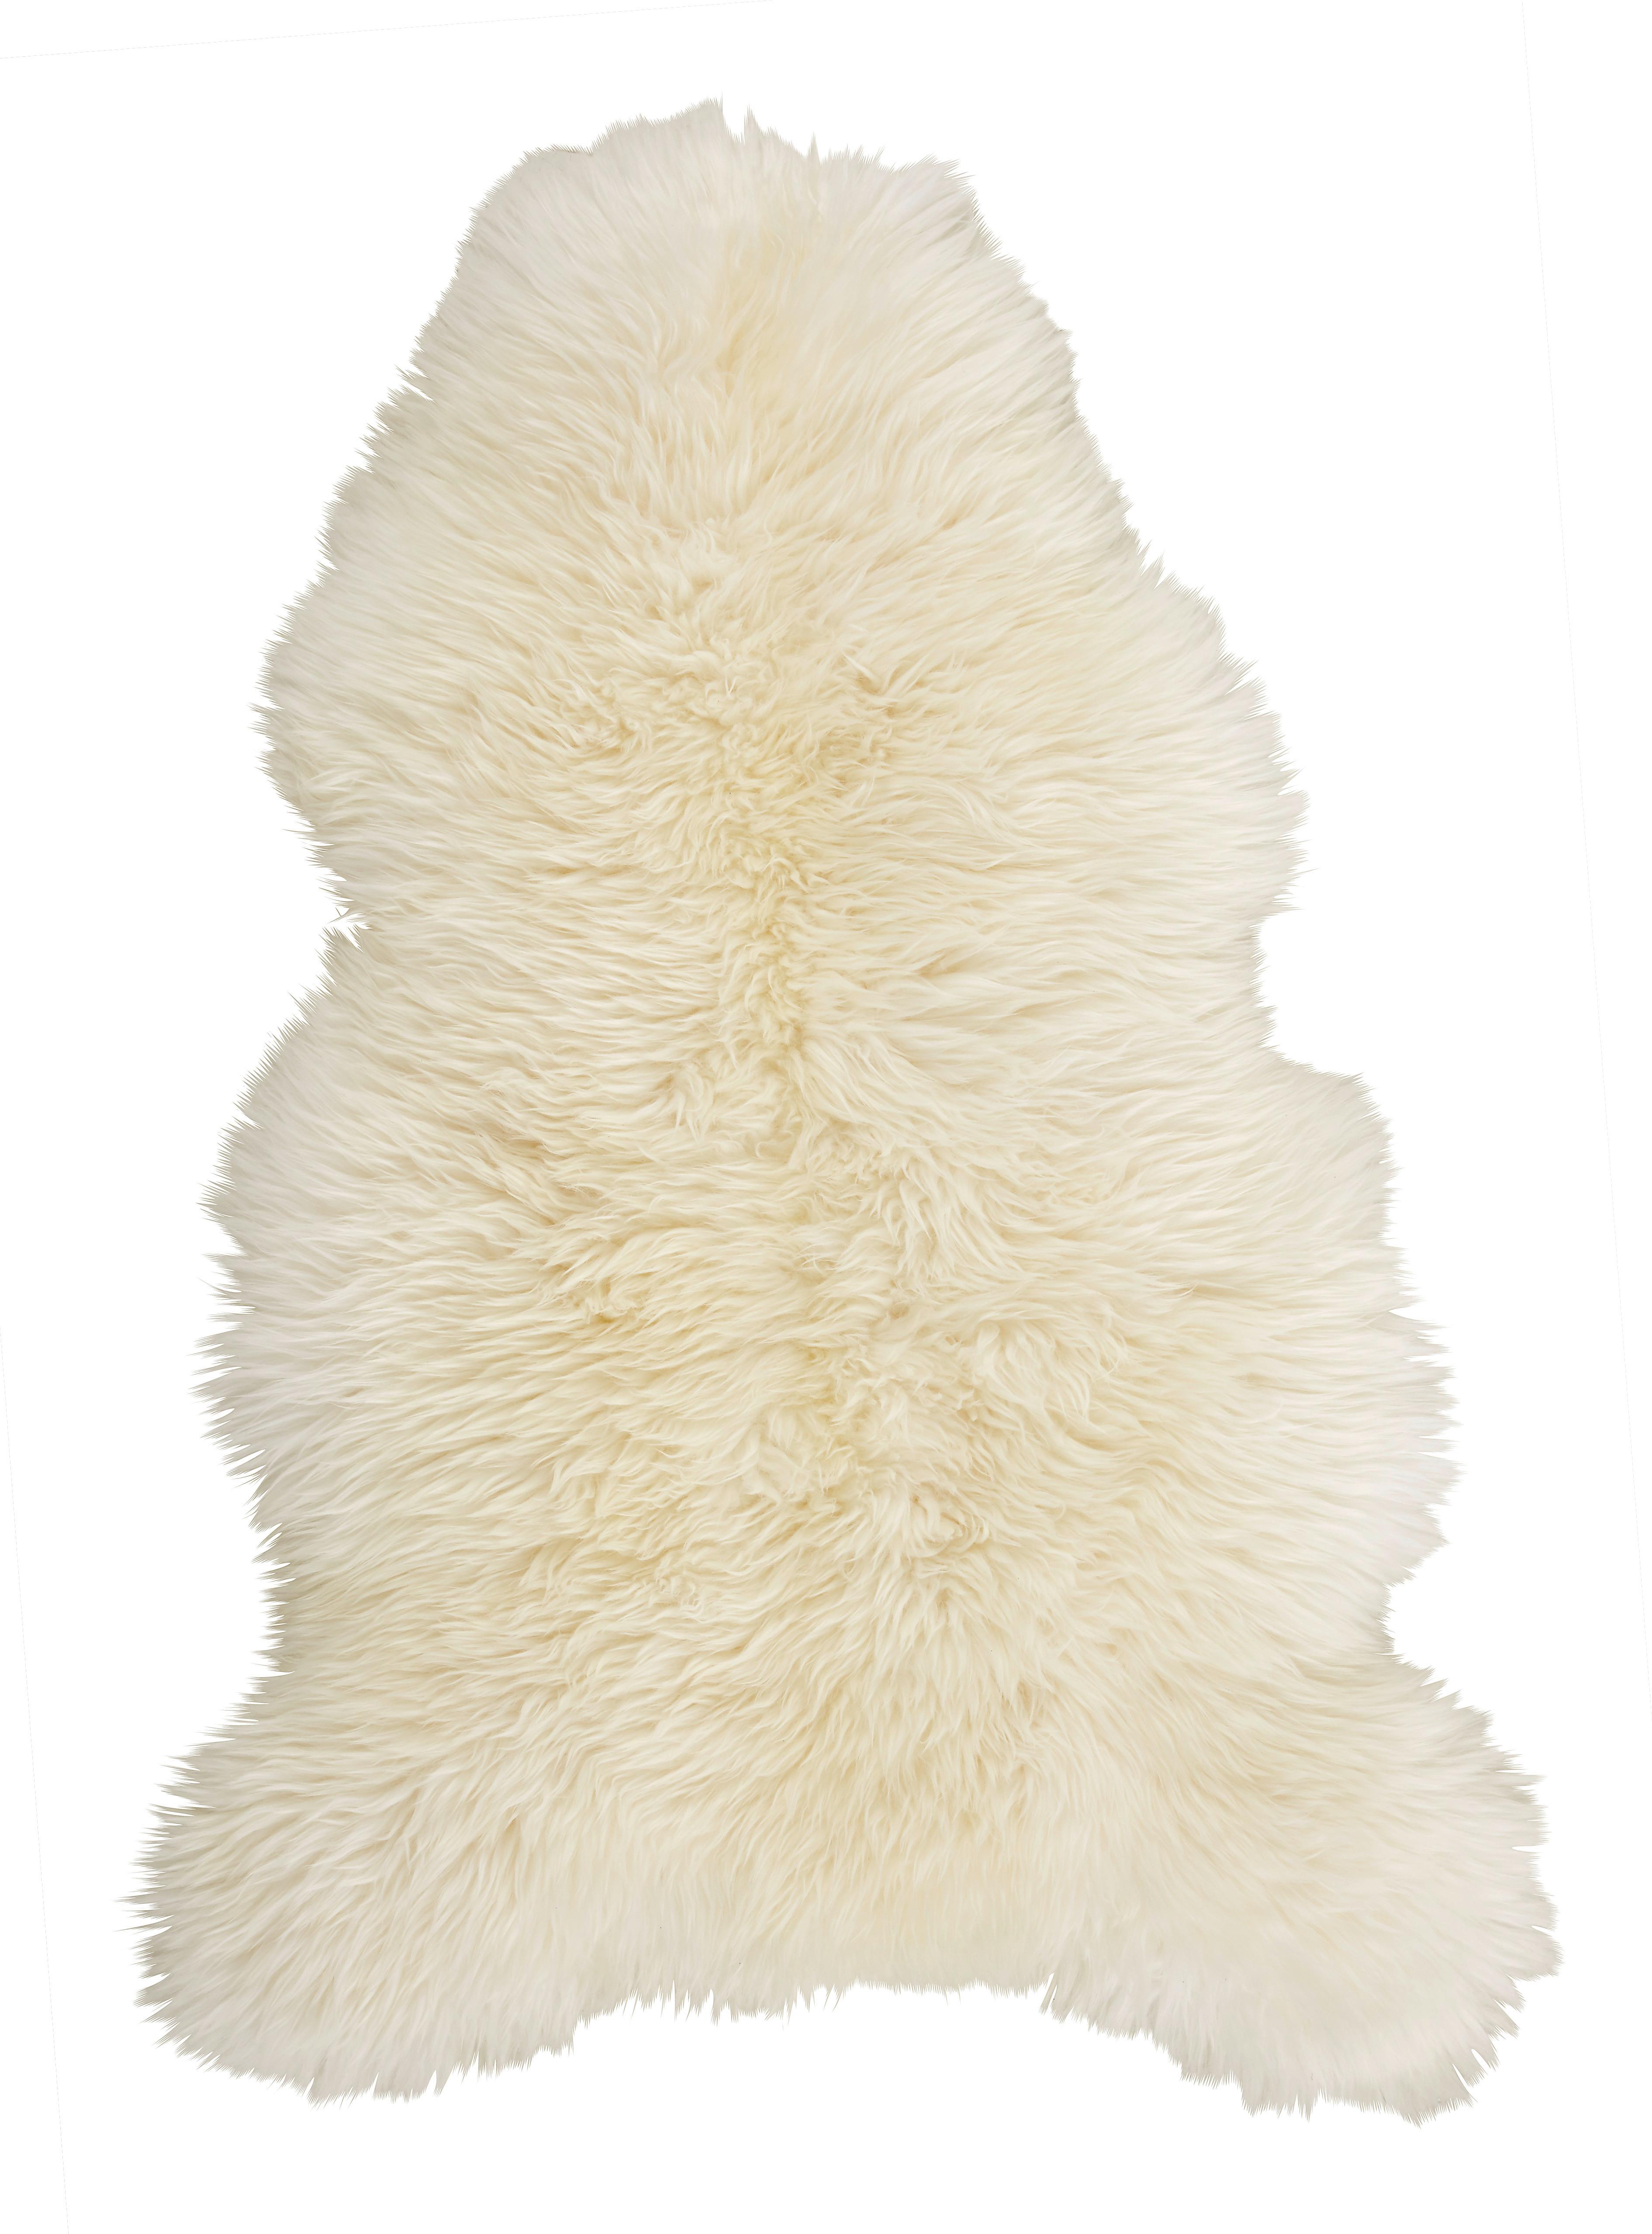 Kůže Ovčí Jenny, 90-105/60cm, Bílá - bílá, kožešina (90-105/60cm) - Modern Living